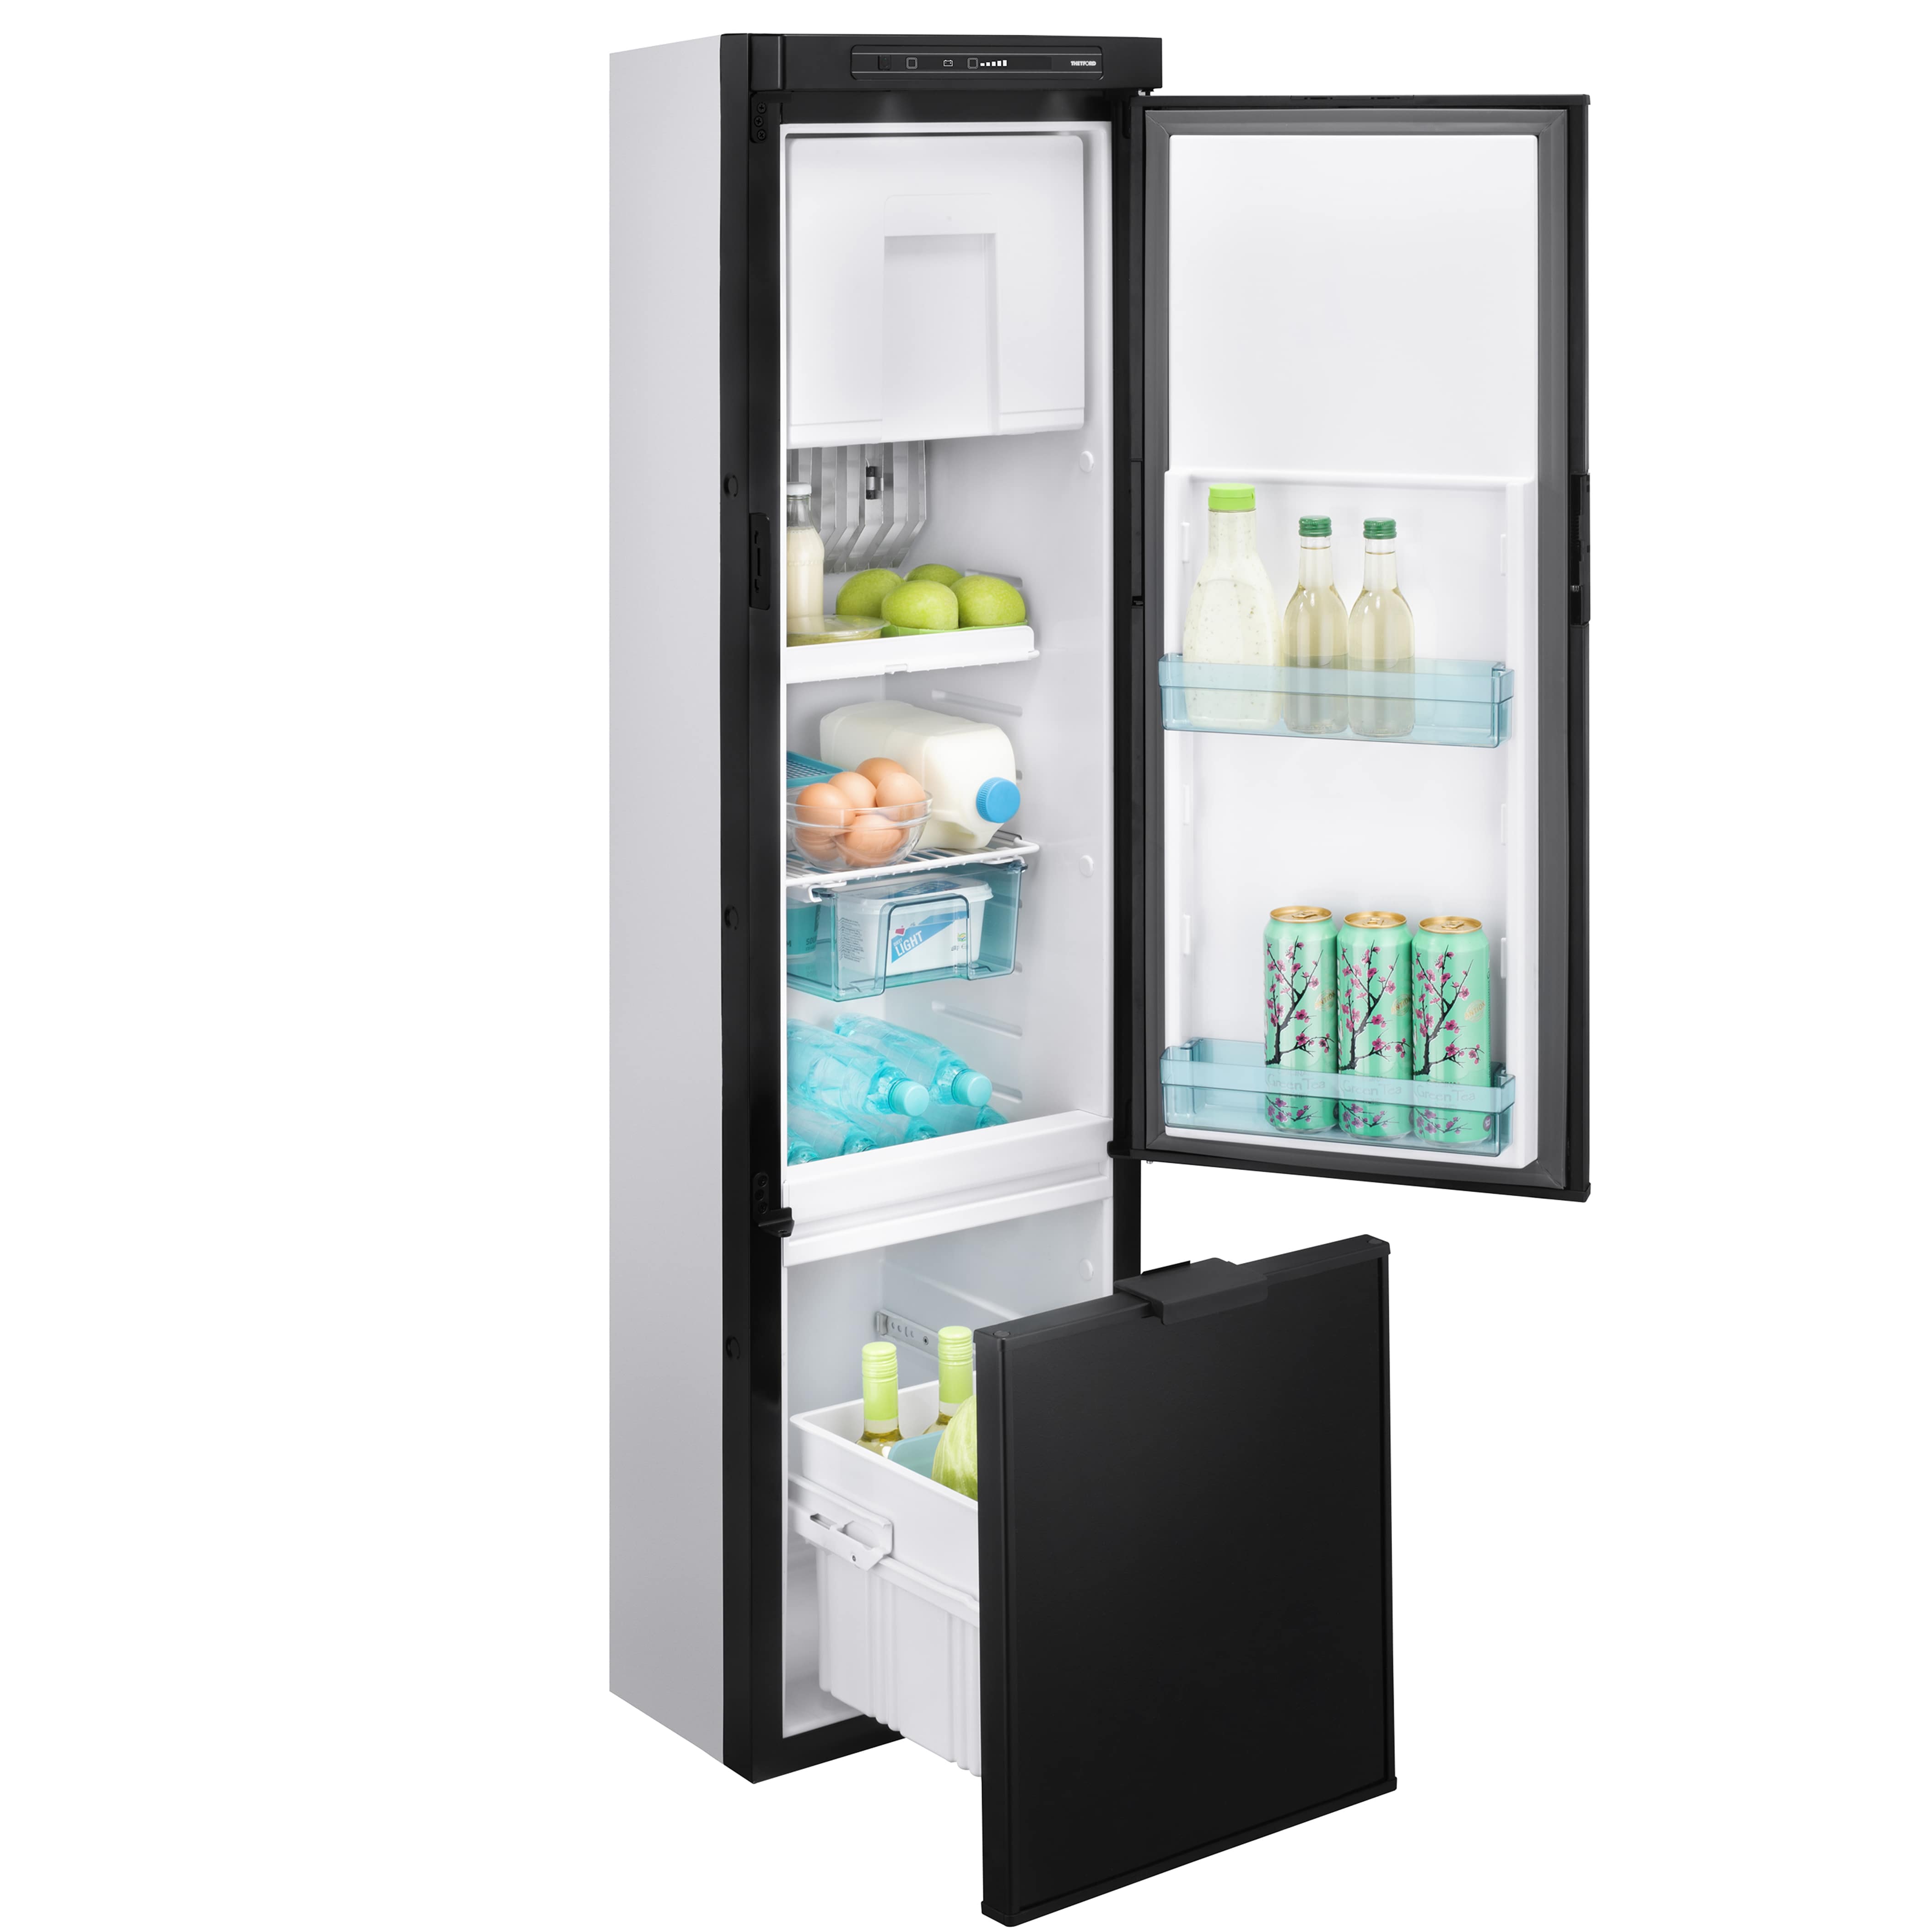 Холодильник узкий 45 купить. Узкий холодильник 40 см двухкамерный Samsung. Холодильник не глубокий 45 см и высокий. Холодильник глубина 45. Холодильник узкий 45-50см ширина.